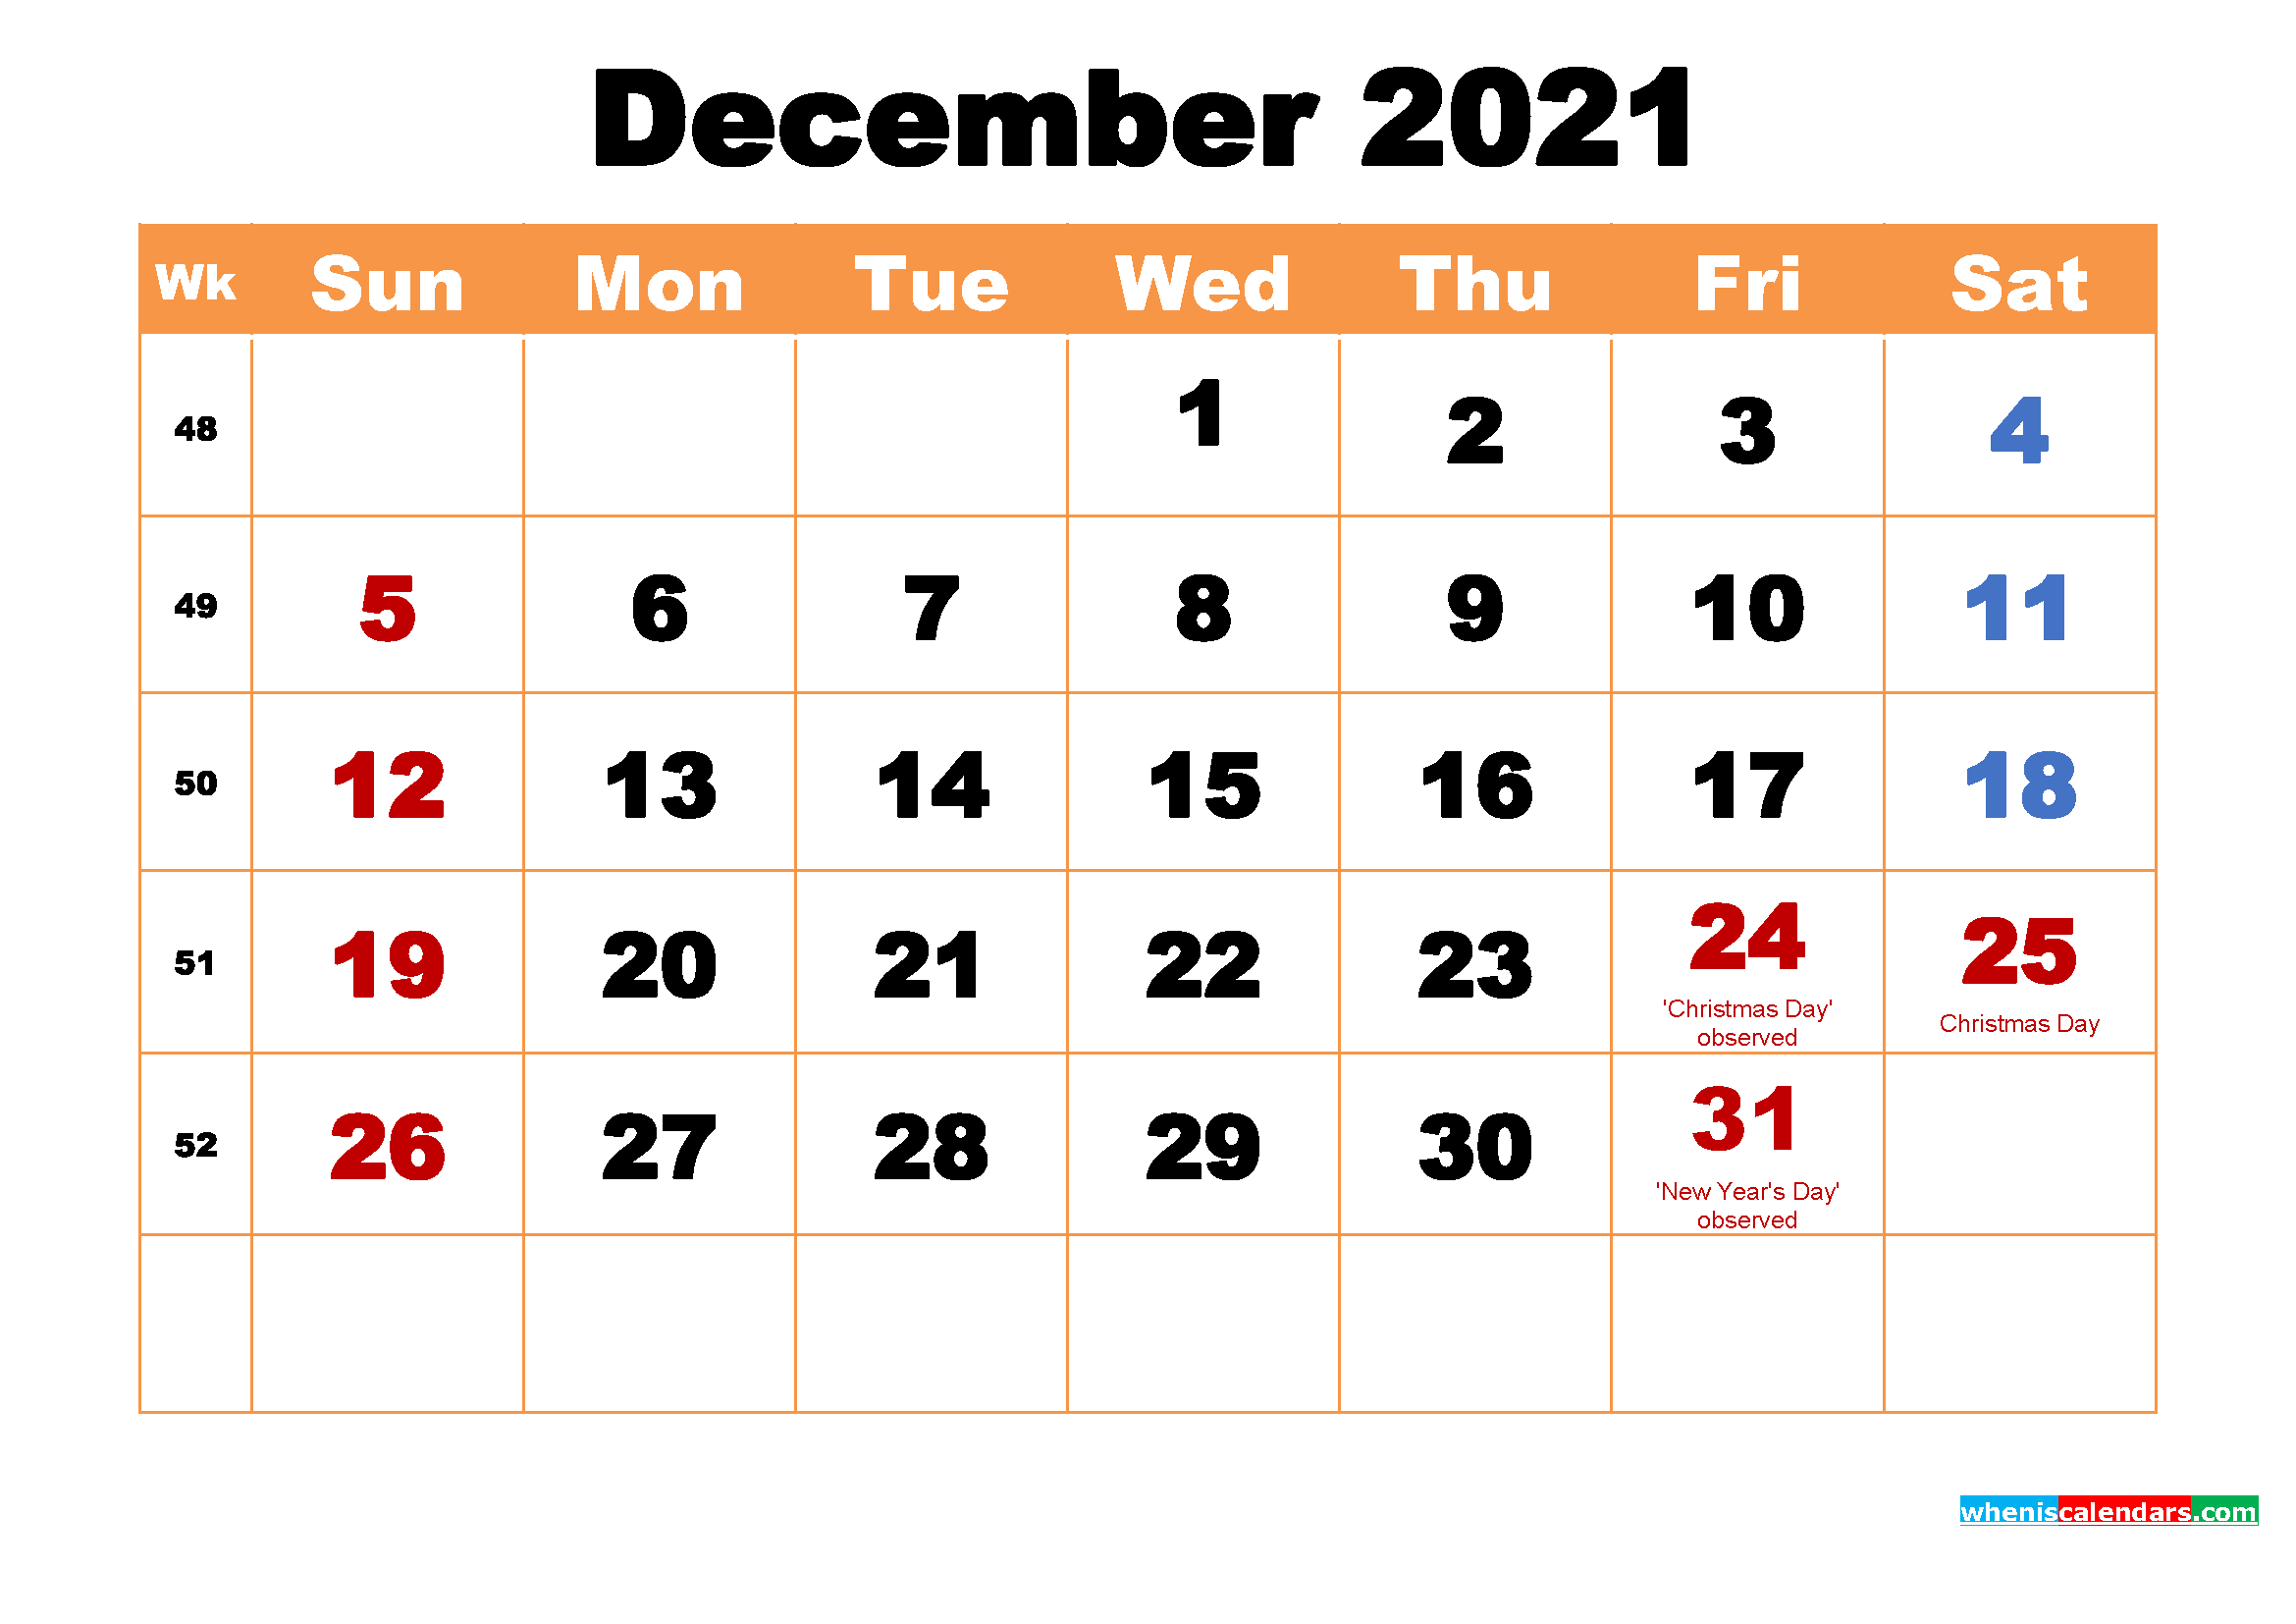 December 2021 Calendar Wallpaper High Resolution